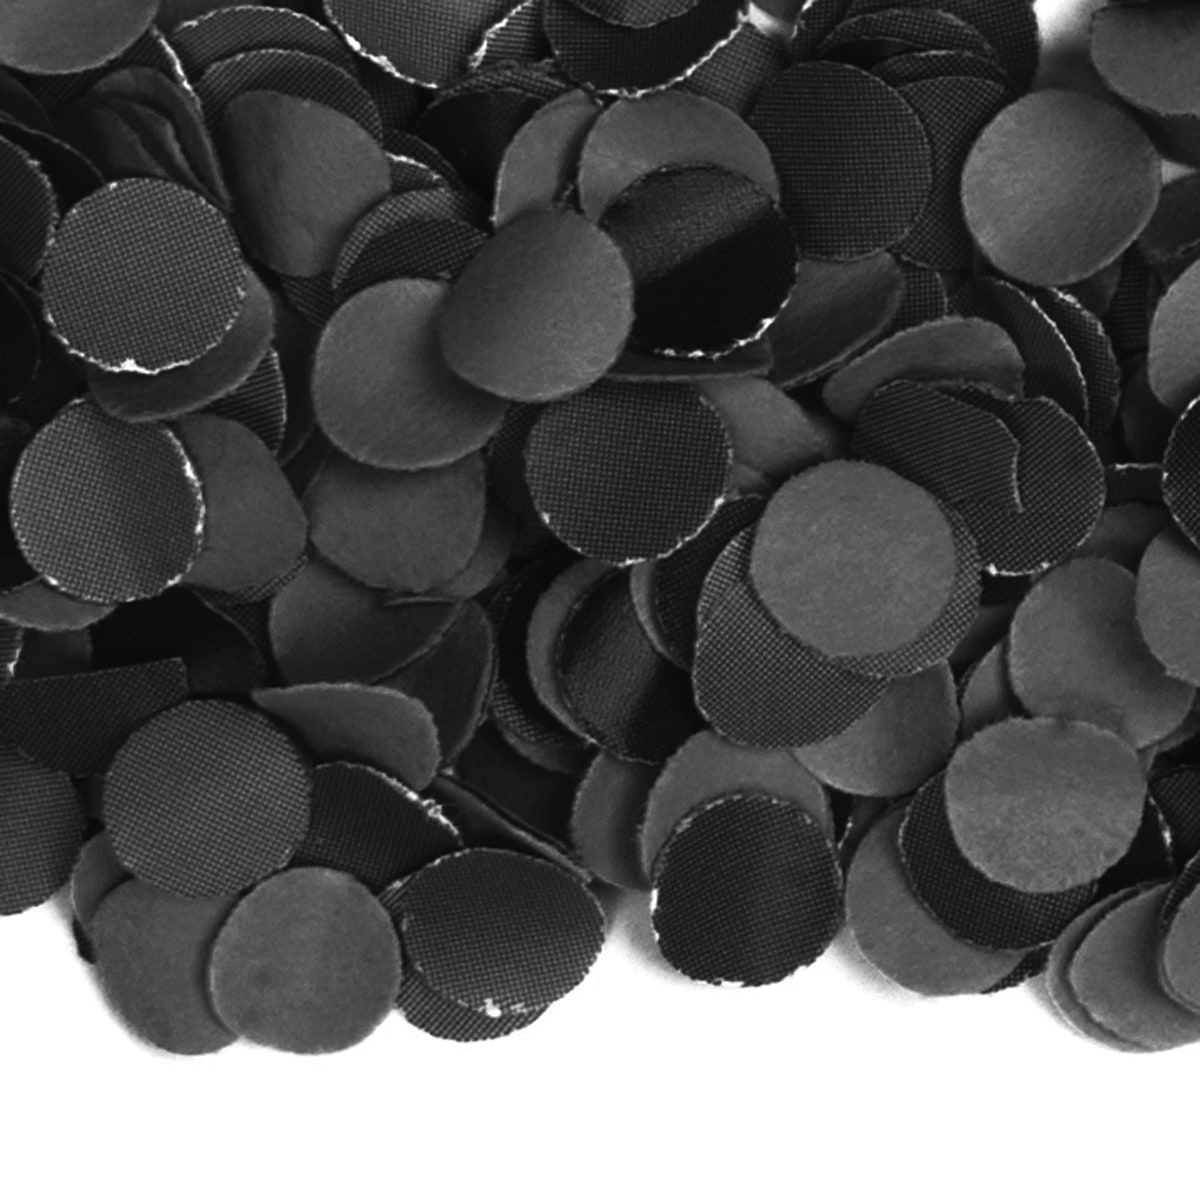 Feest confetti 100 gram zwart